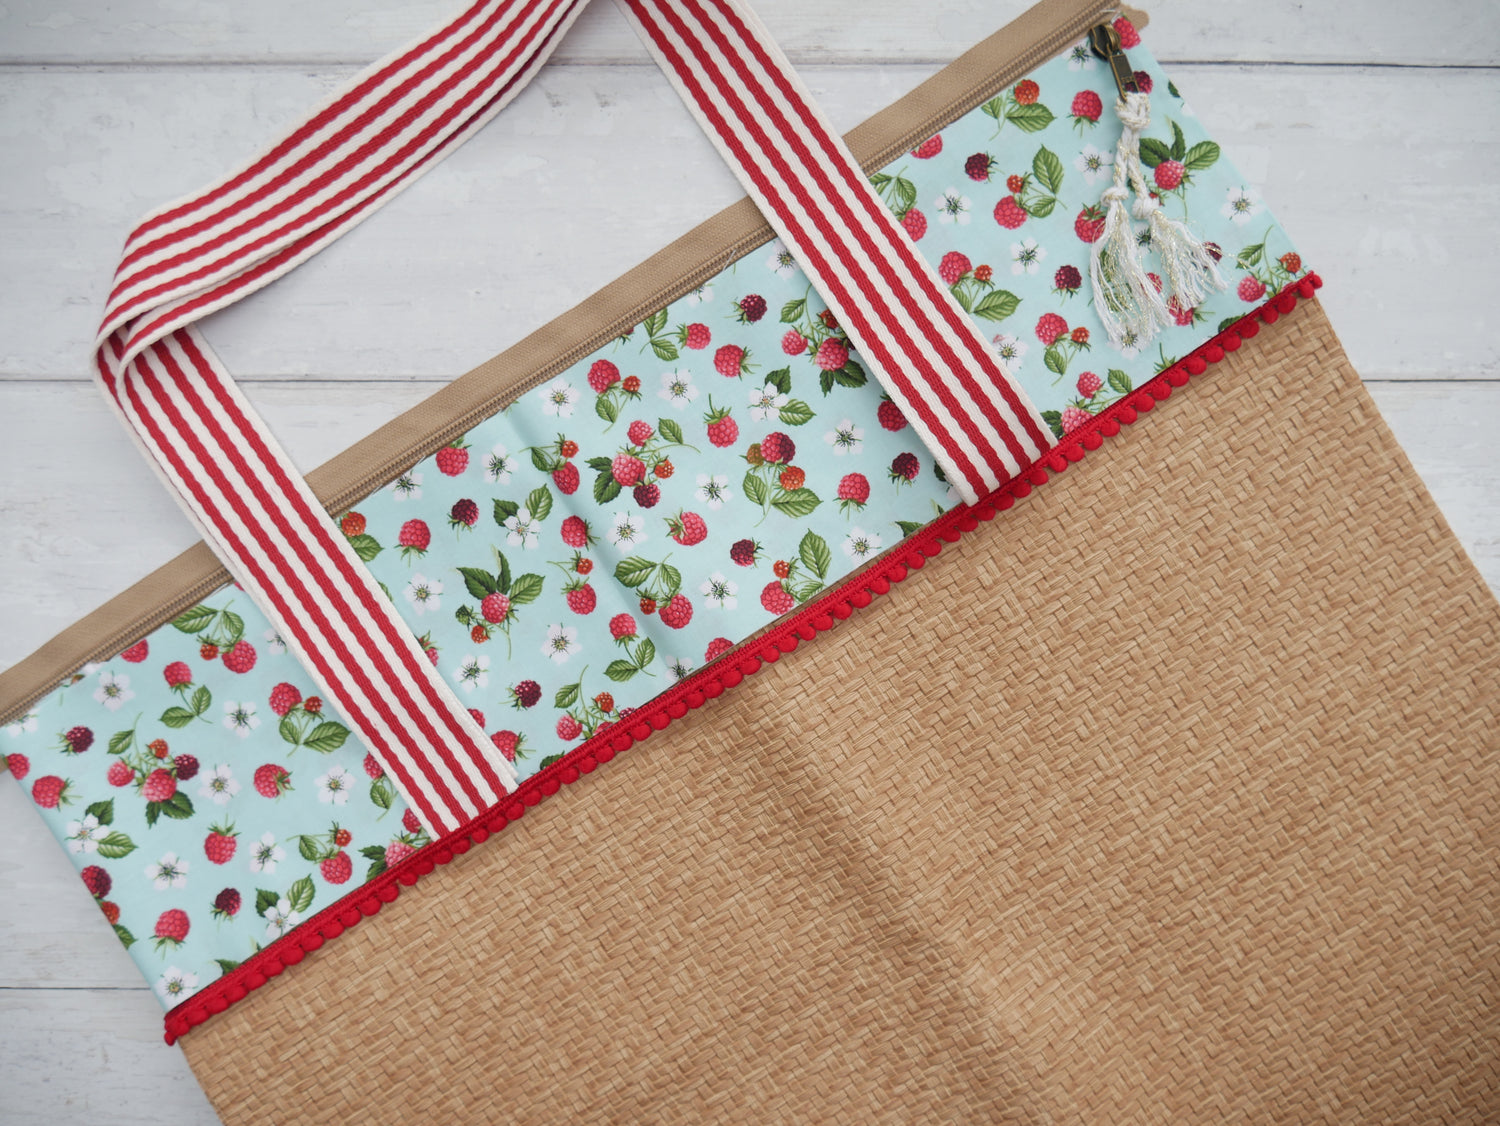 Zip Tote Bag Kit - Raspberries-Sewing Kit-Flying Bobbins Haberdashery